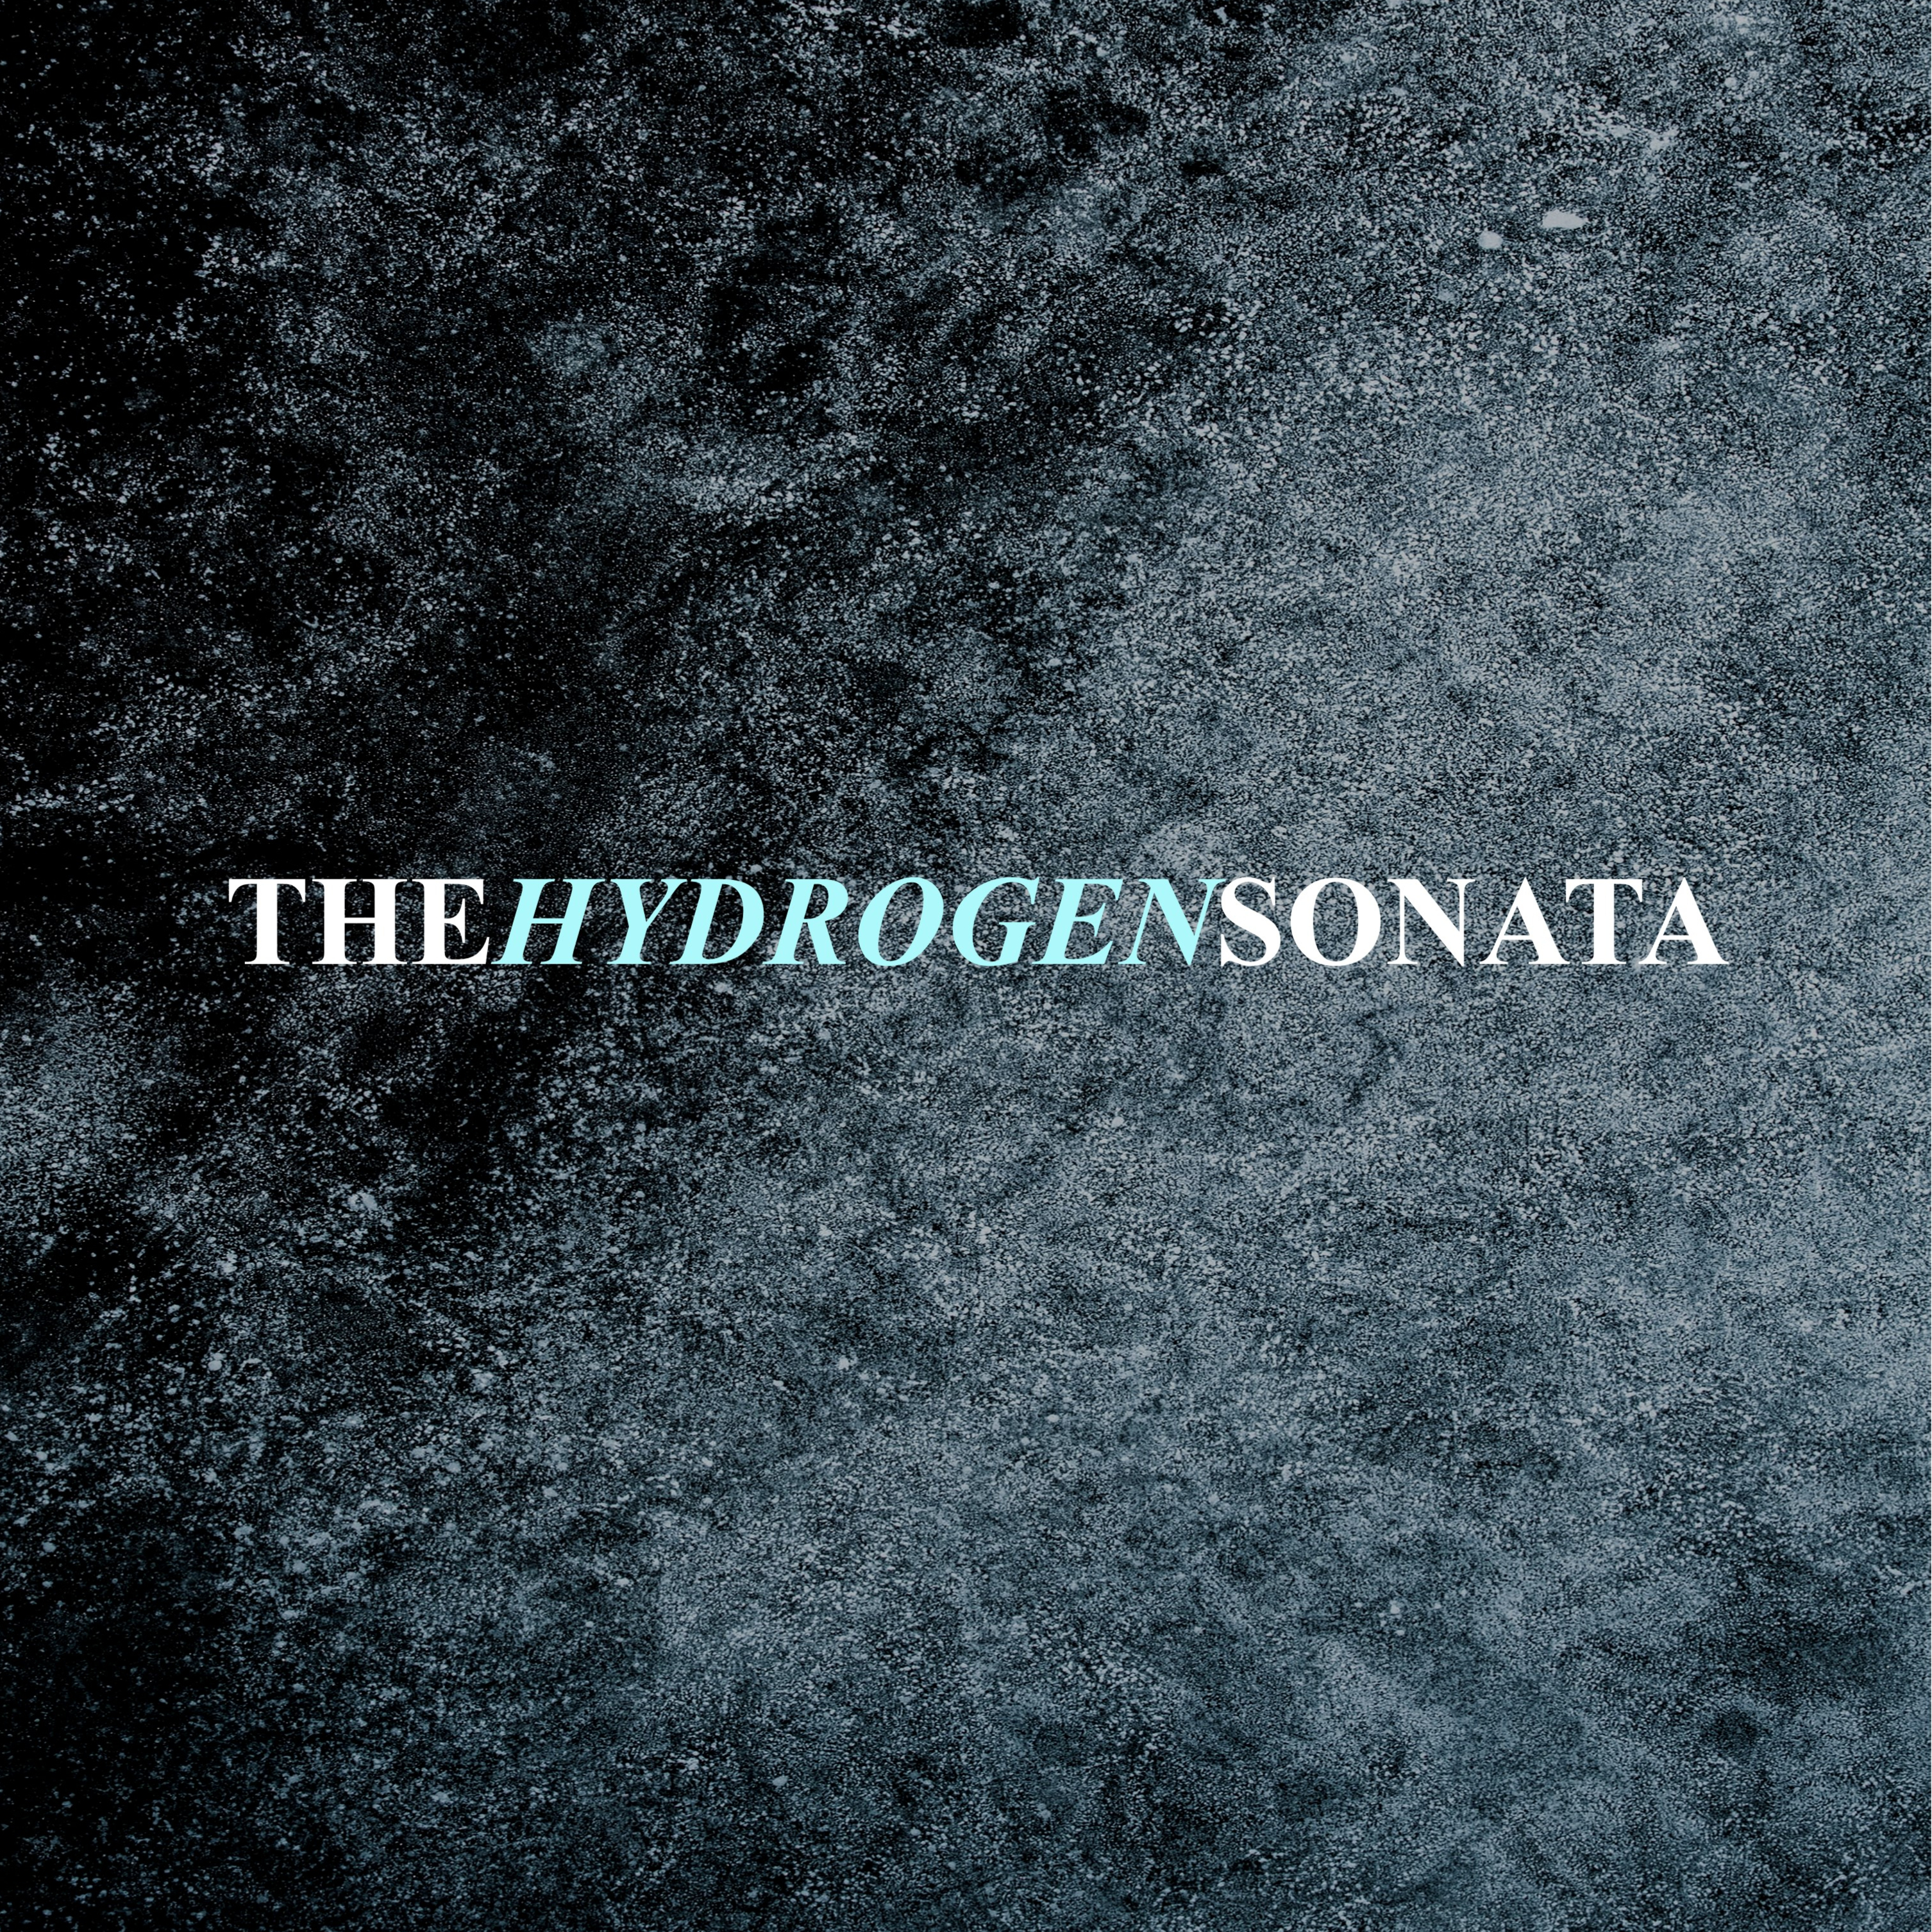 THE HYDROGEN SONATA